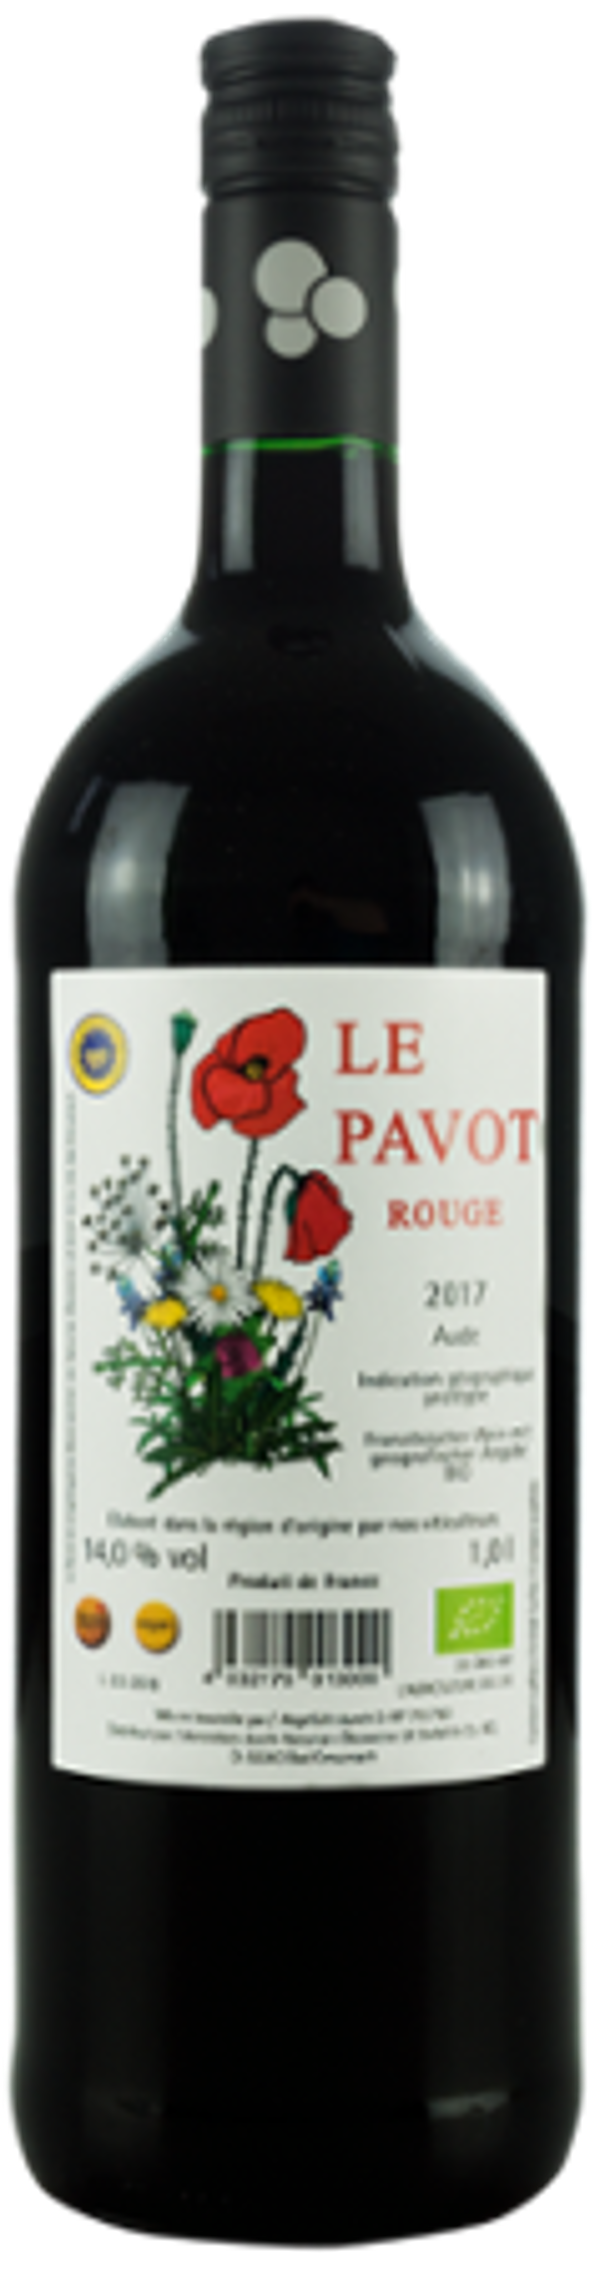 Produktfoto zu Le Pavot Rouge